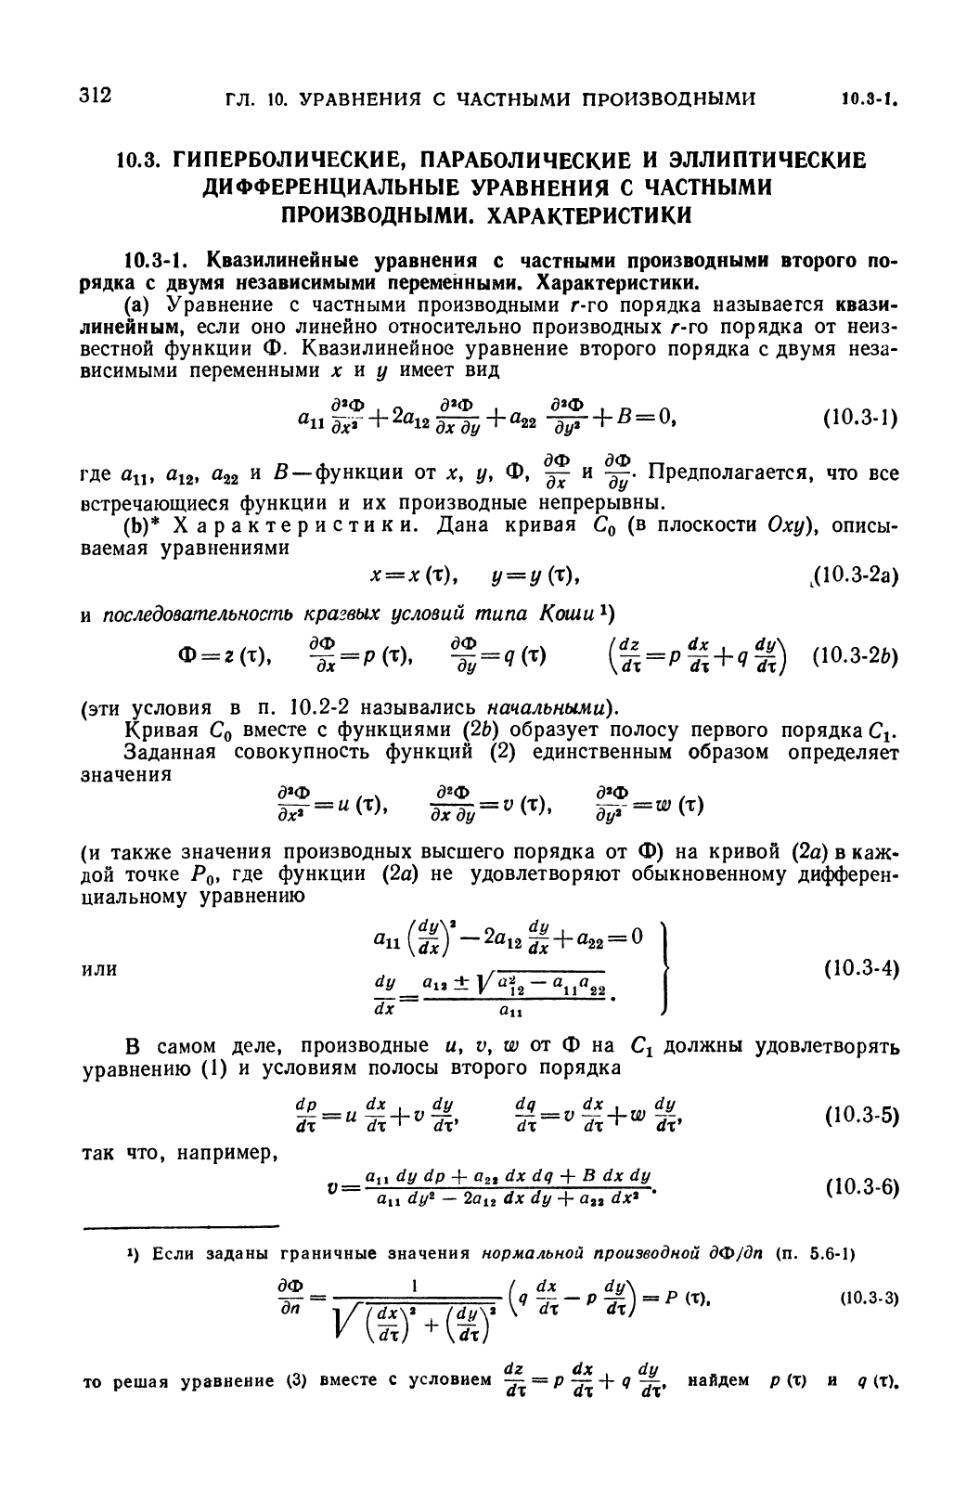 10.3. Гиперболические, параболические и эллиптические дифференциальные уравнения с частными производными. Характеристики